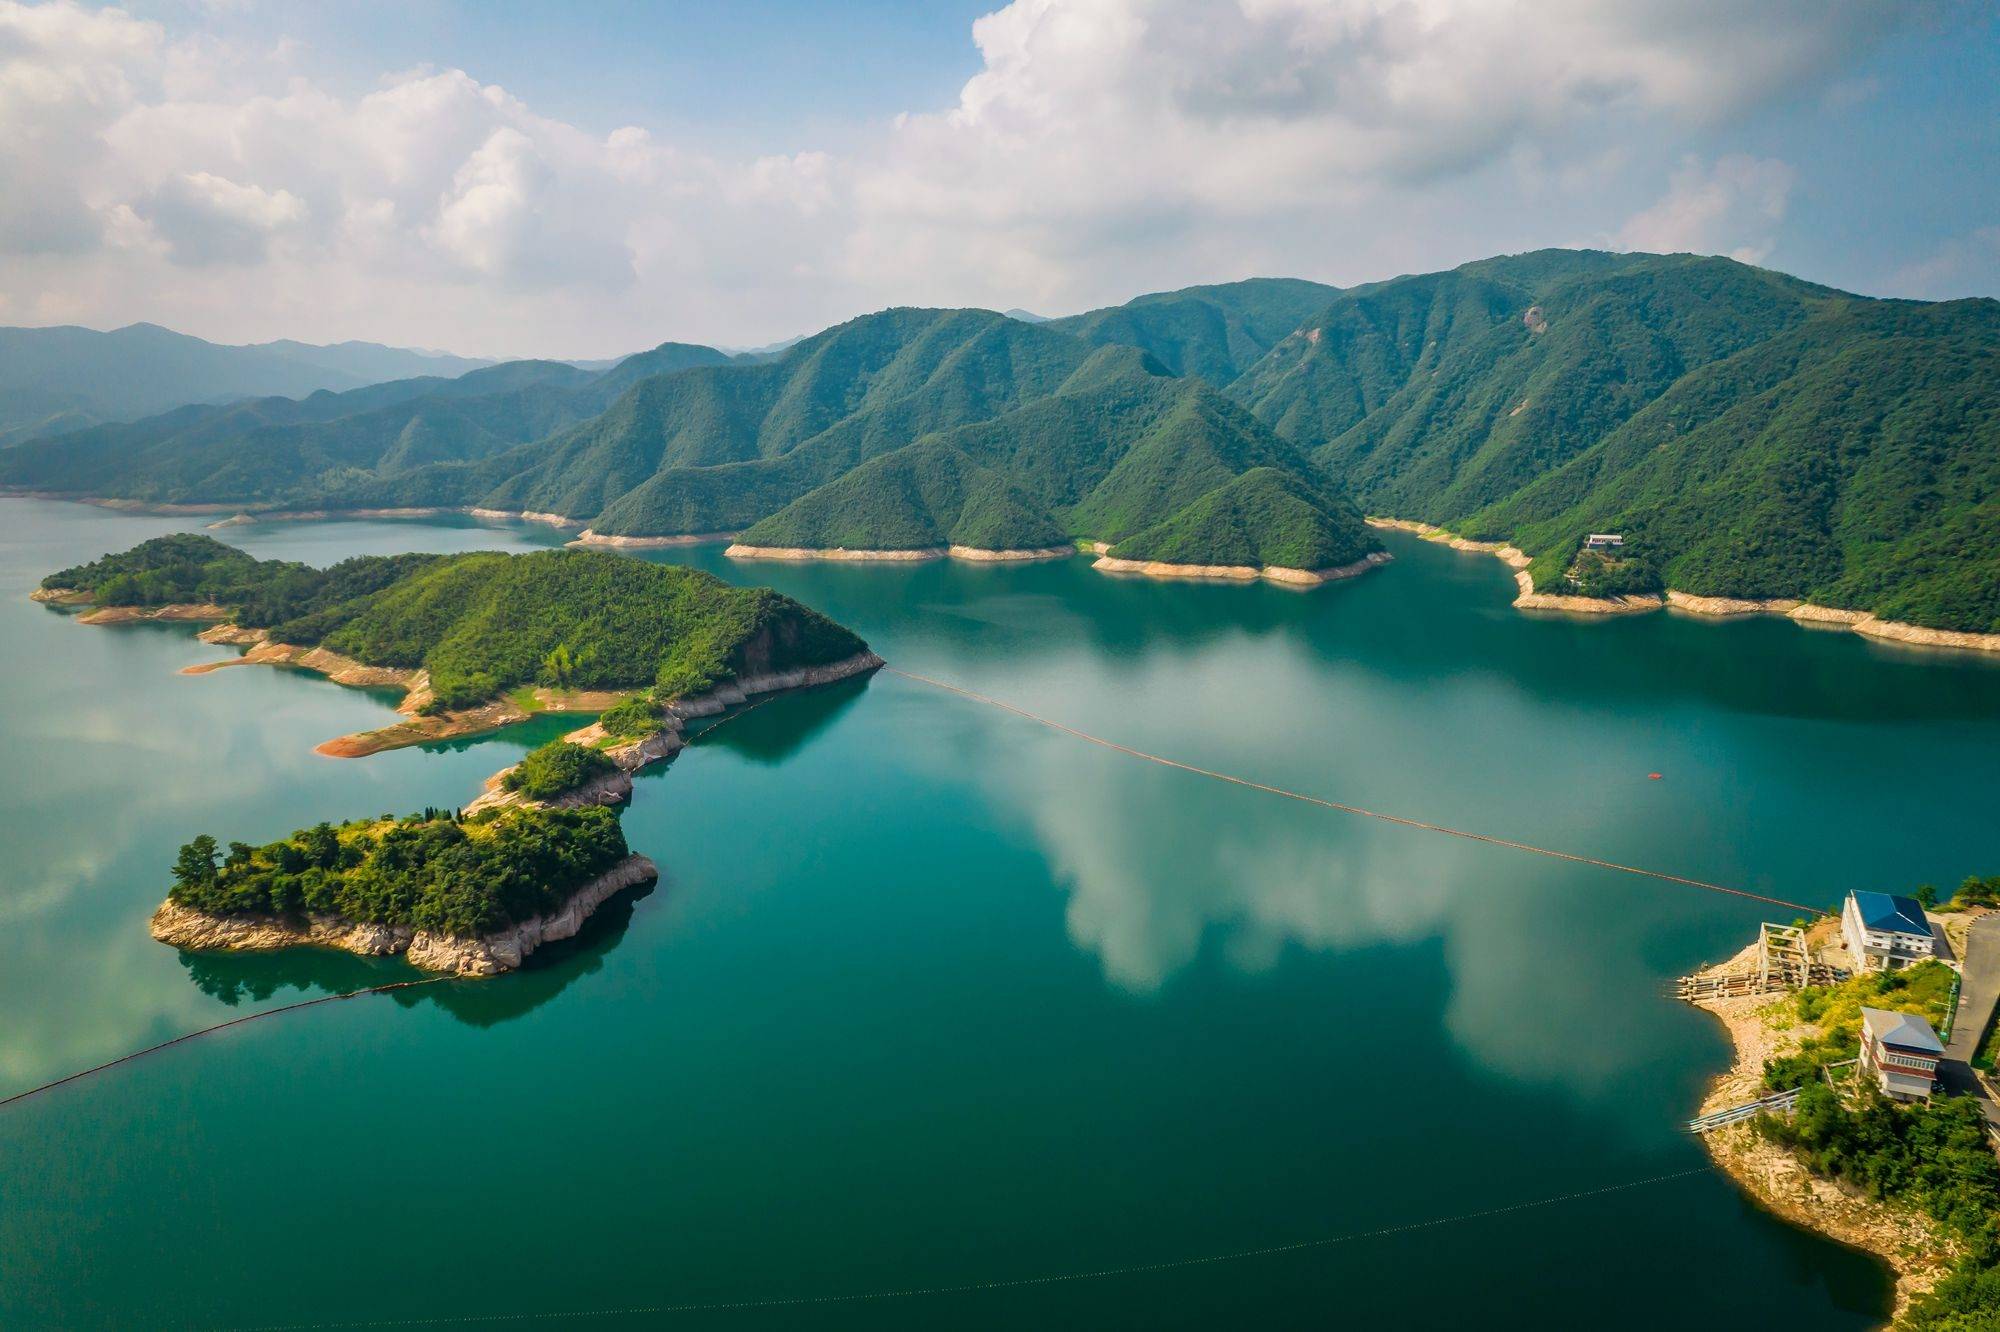 安徽六安梅山水库,这里的人工湖风光秀美,俯览如同江南风情画